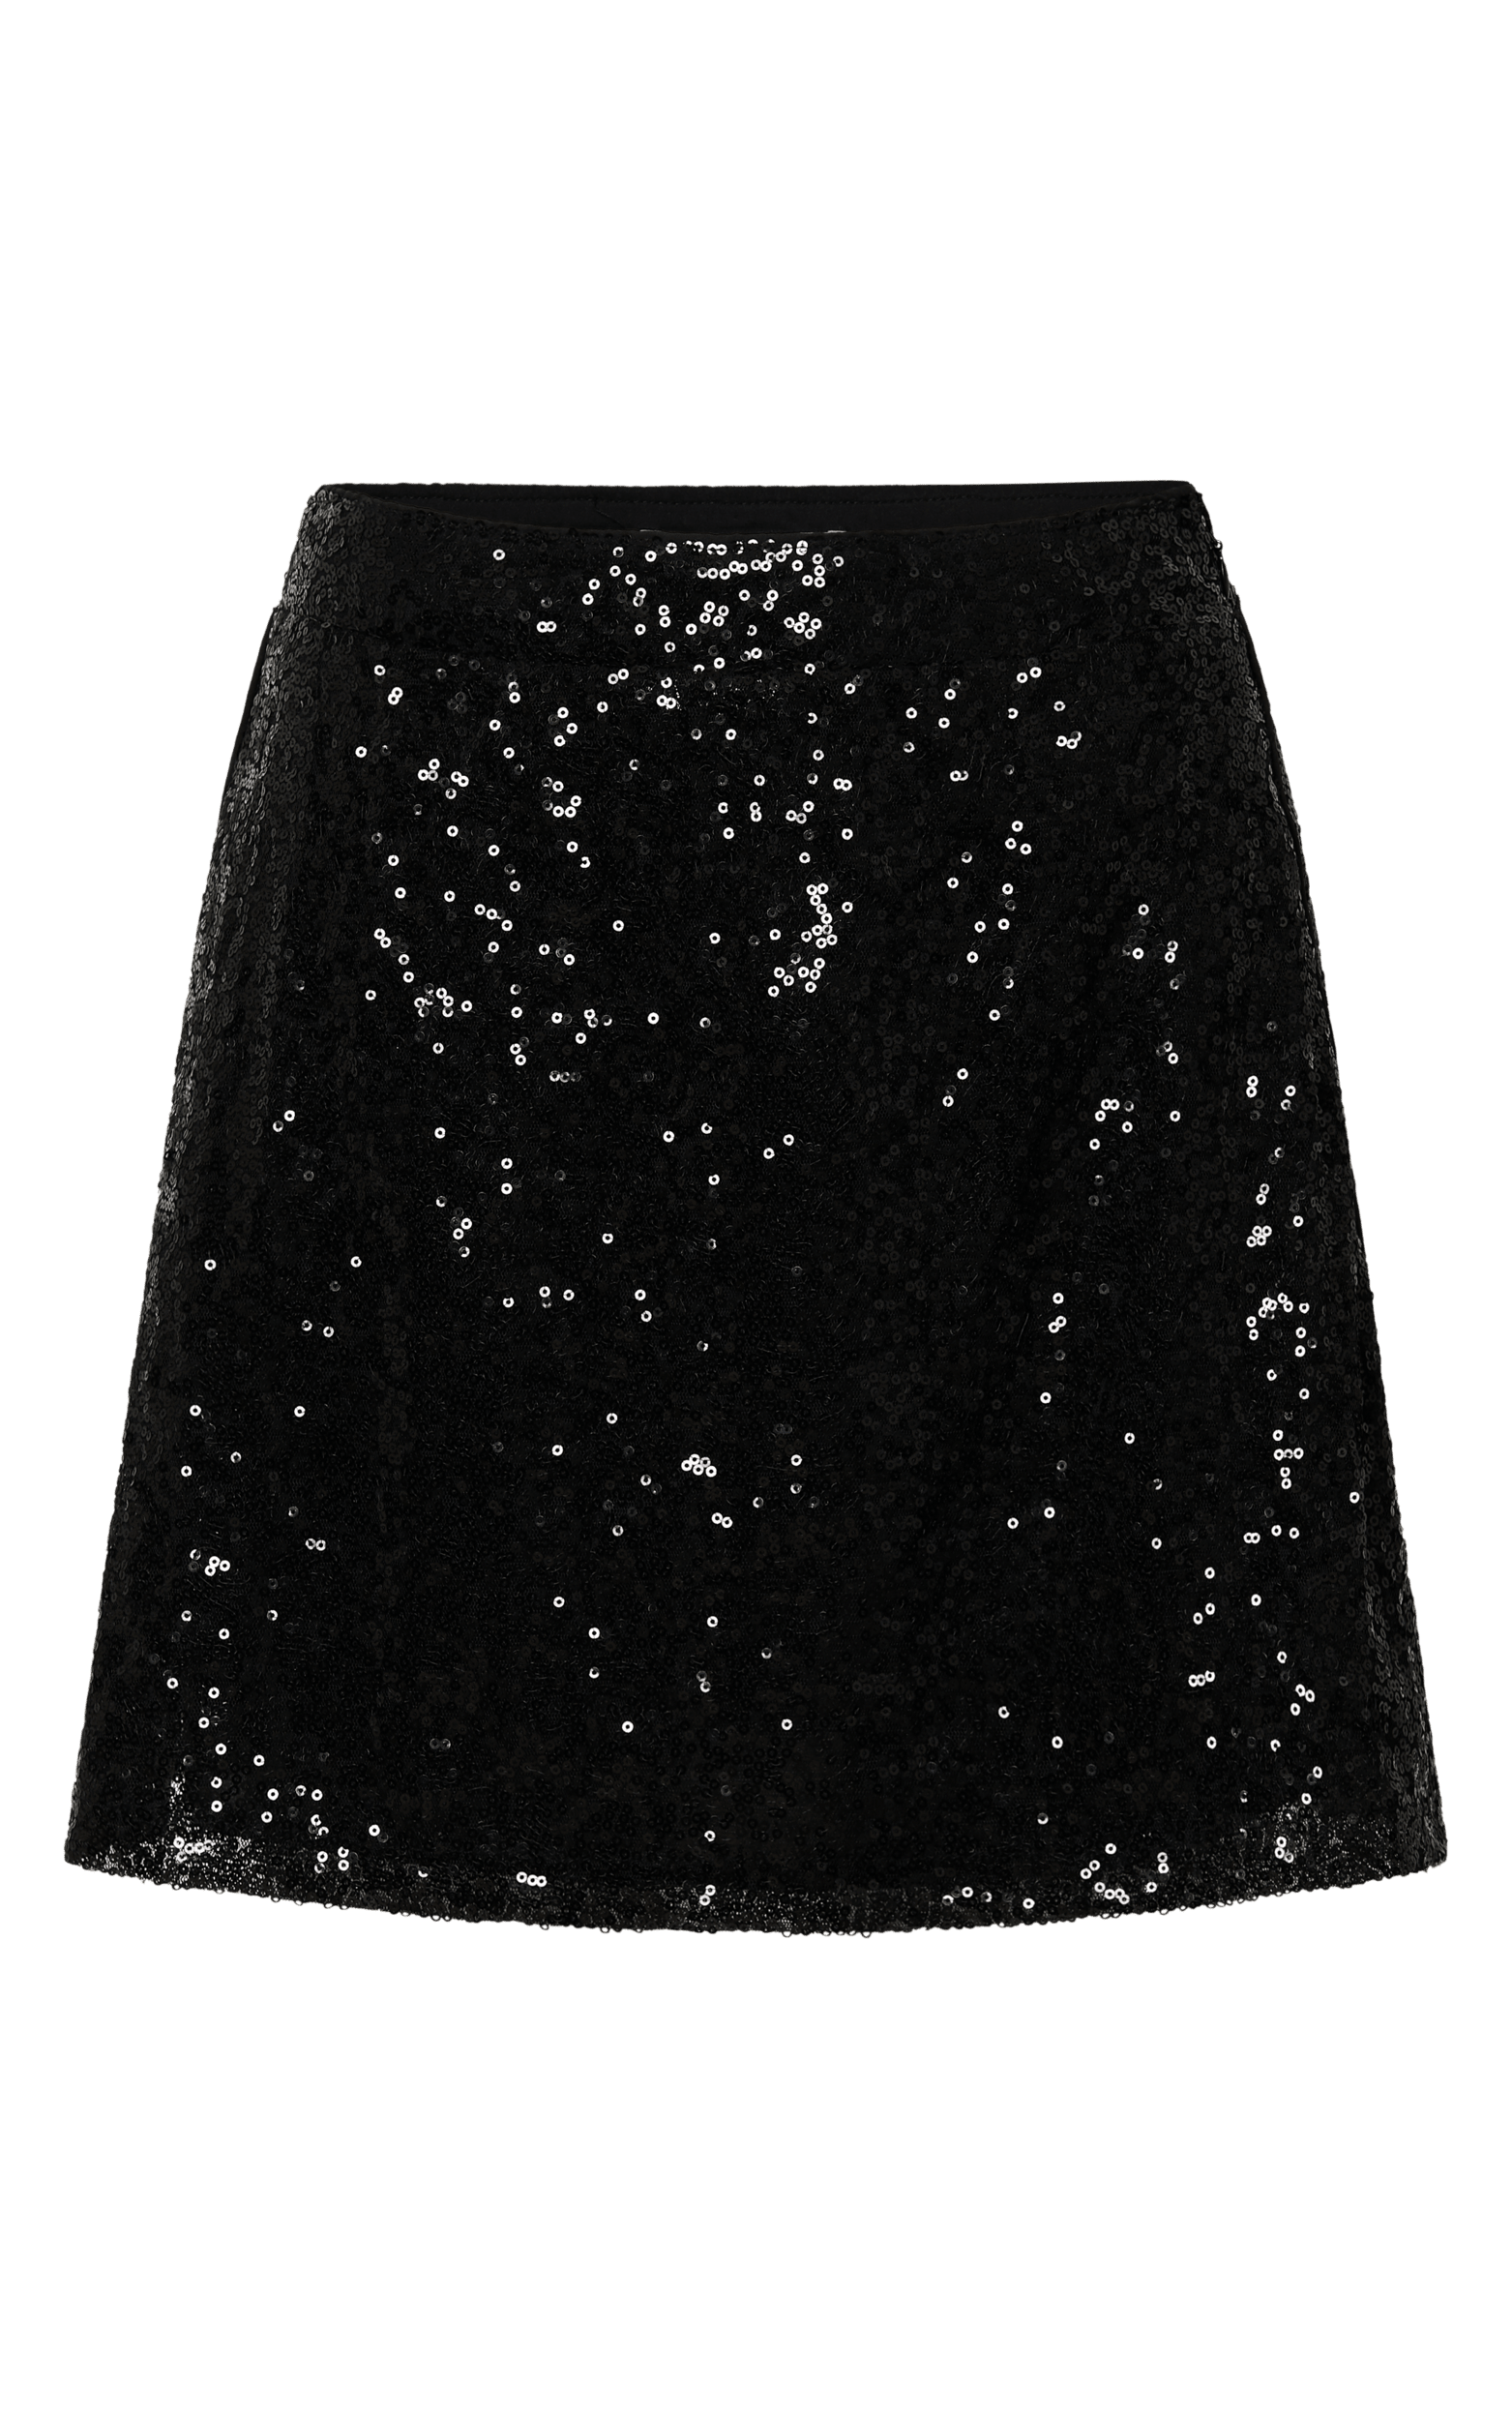 Elswyth Mini Skirt - Side Split Sequin Skirt in Black Sequin | Showpo